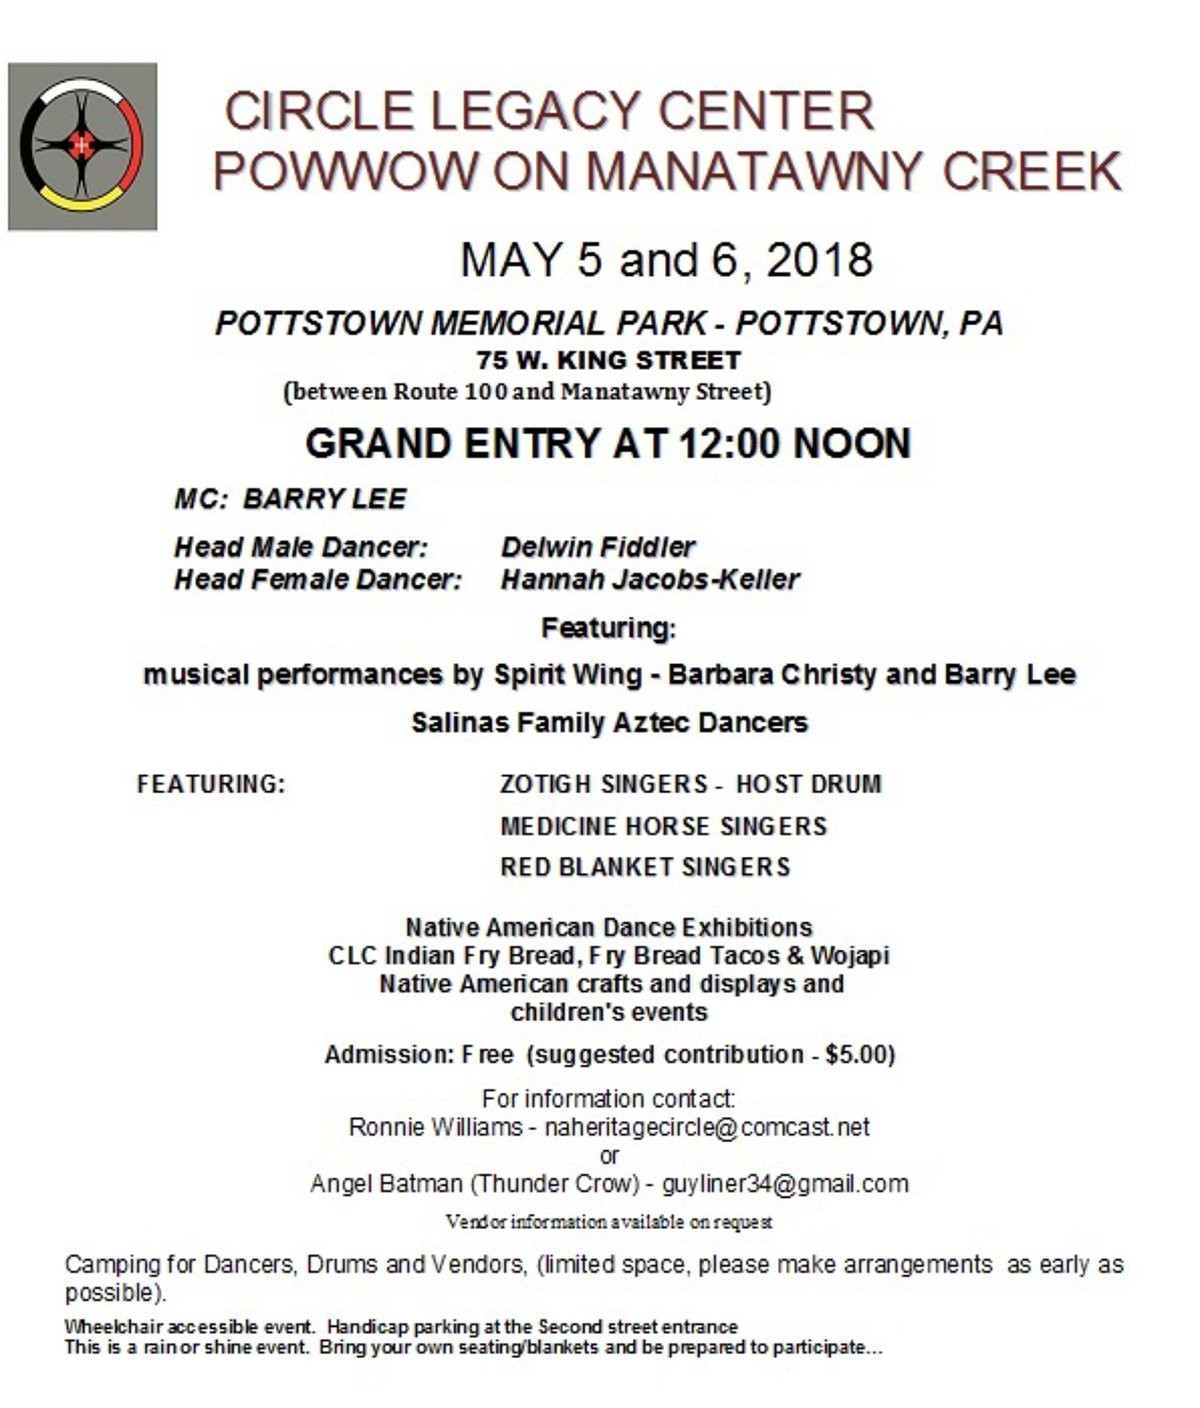 Manatawny Creek Powwow